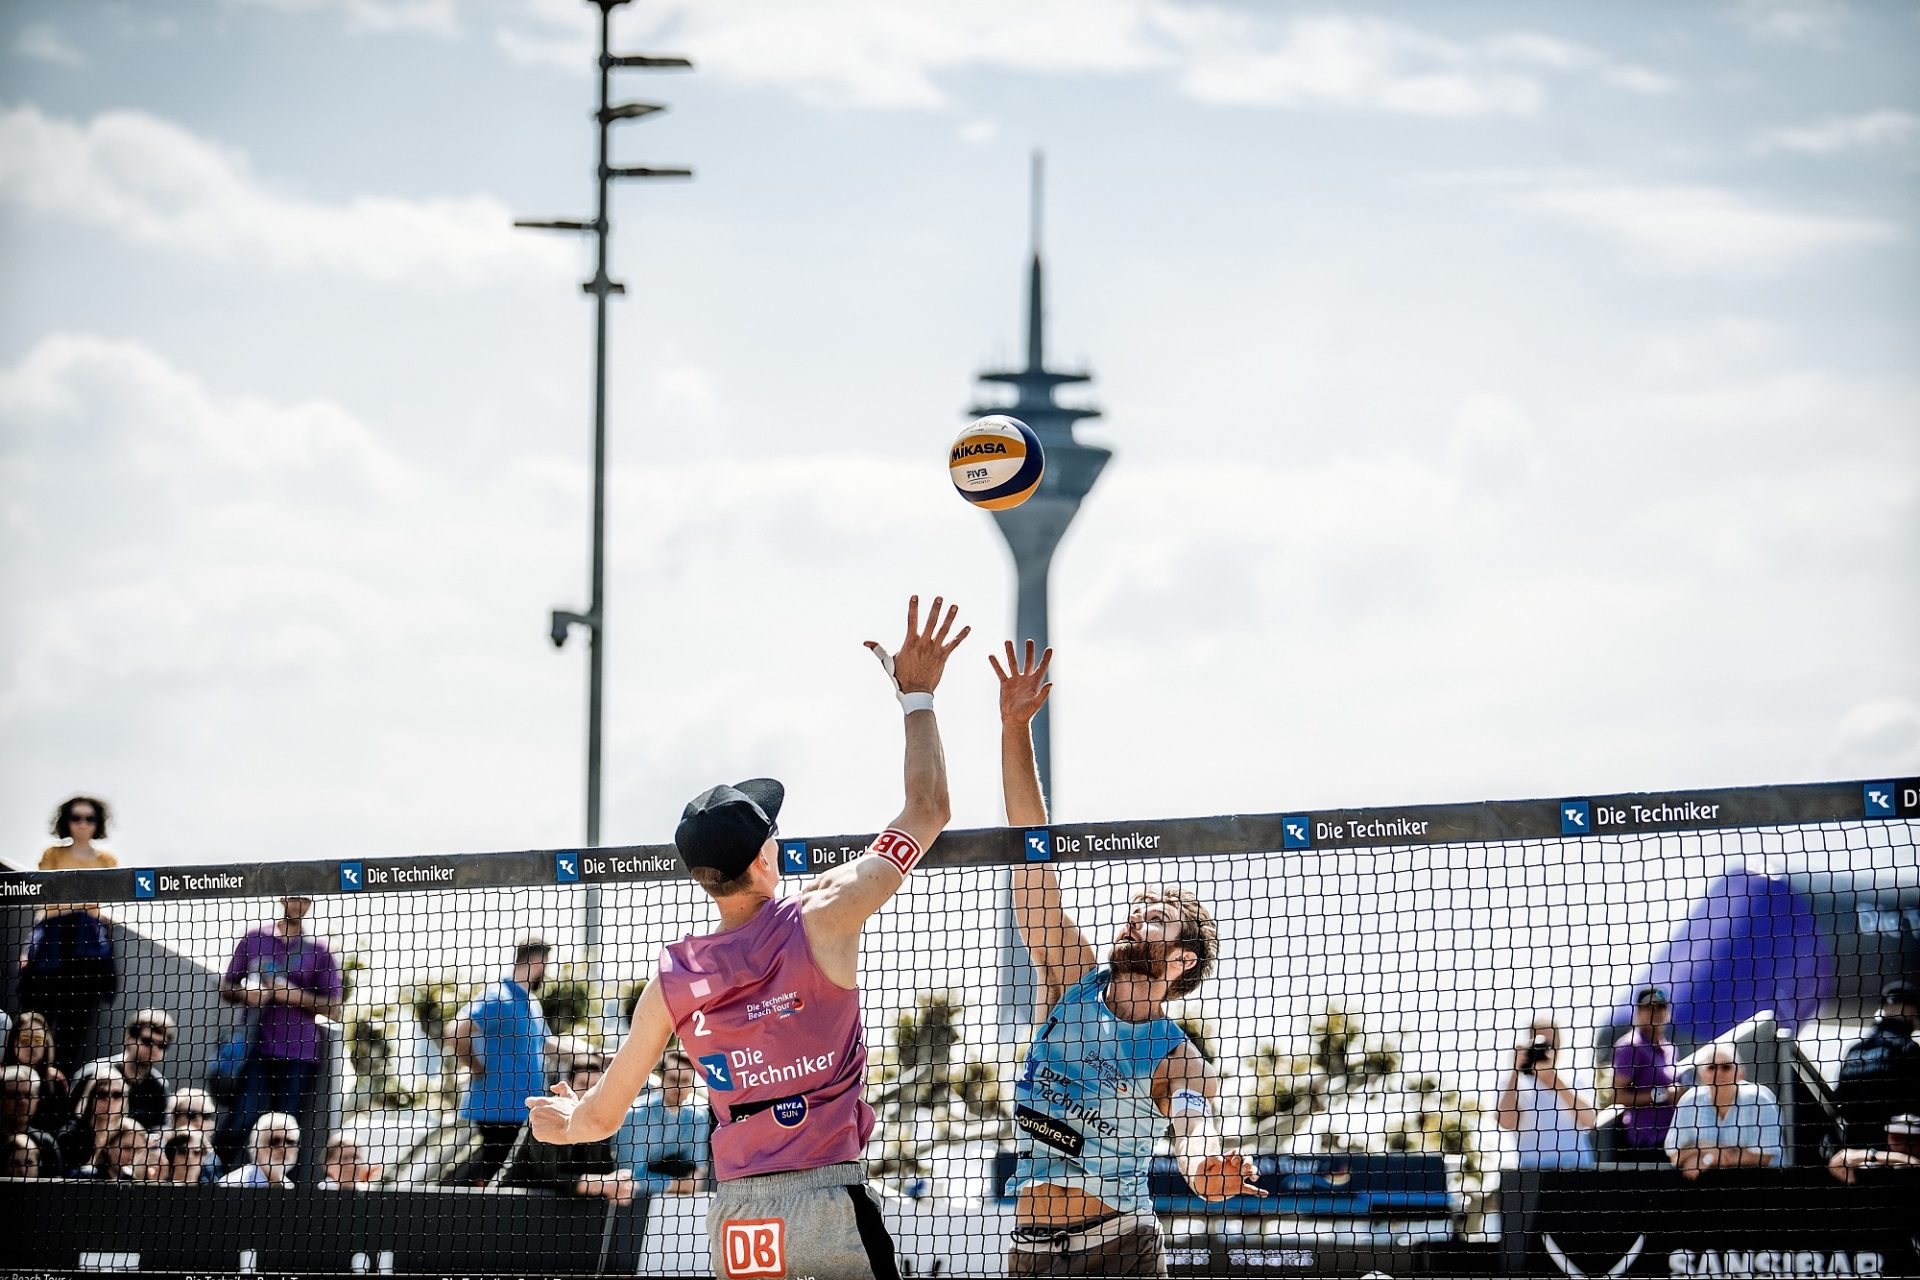 Beachvolleyball hat unter den Trendsportarten die bisher größte Entwicklung in Düsseldorf gemacht. Das hier abgebildete Turnier fand 2019 auf dem Burgplatz statt. Foto: Andreas Endermann